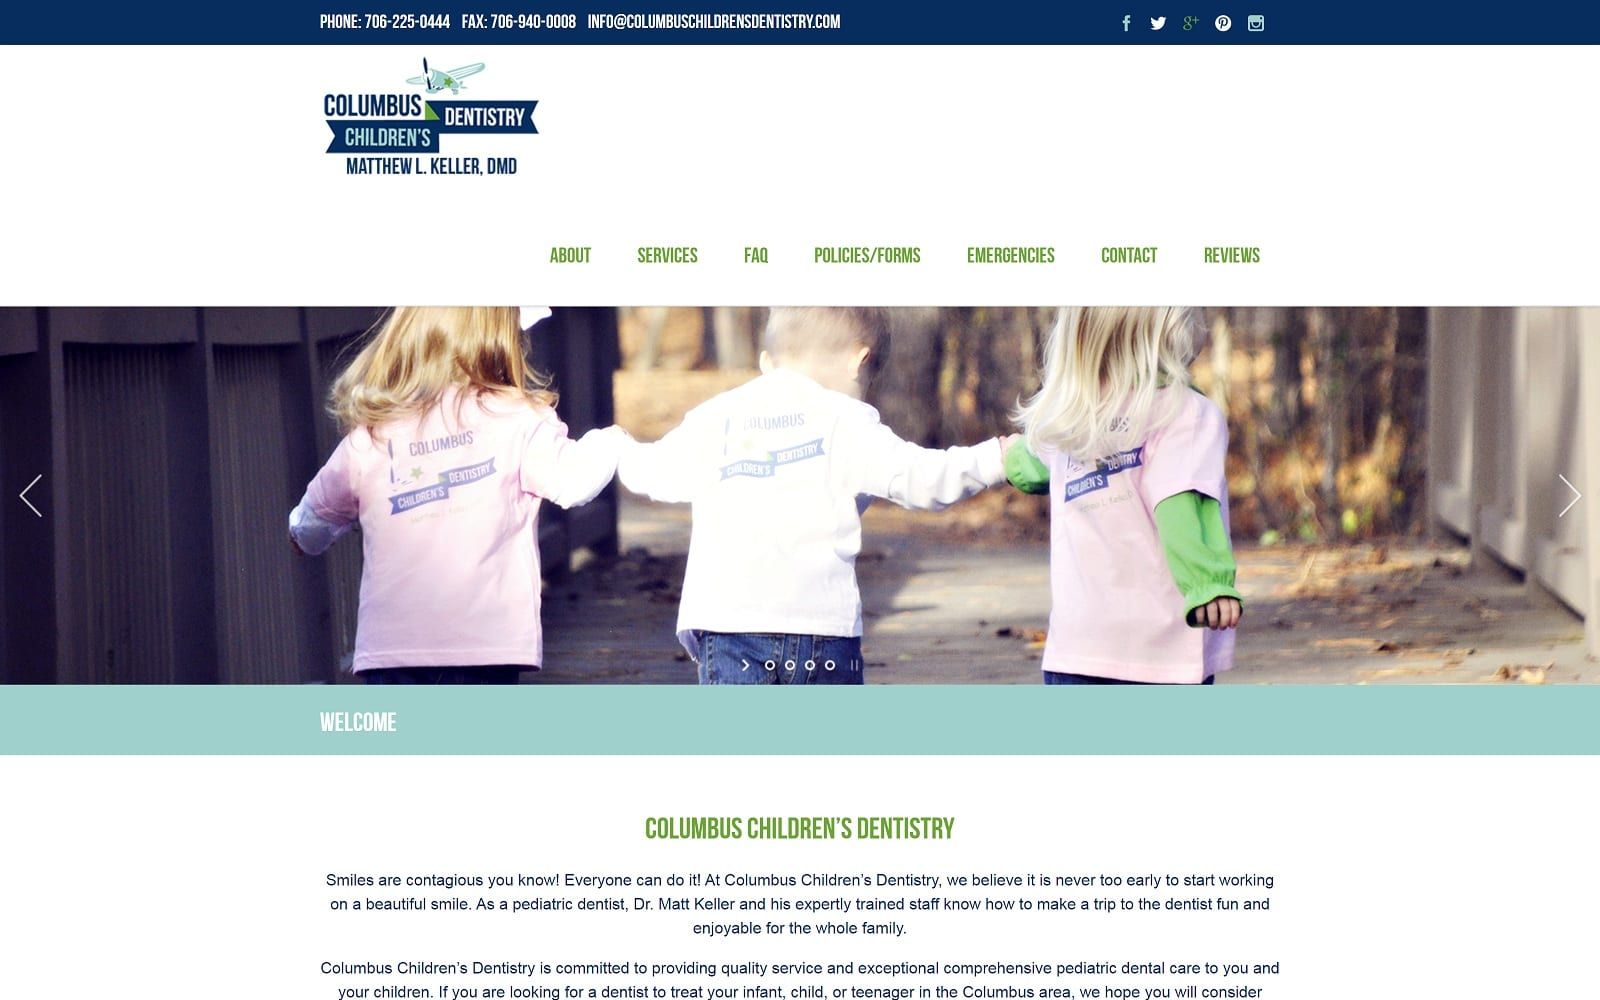 The Screenshot of Columbus Children's Dentistry, Matthew Keller, DMD columbuschildrensdentistry.com Website